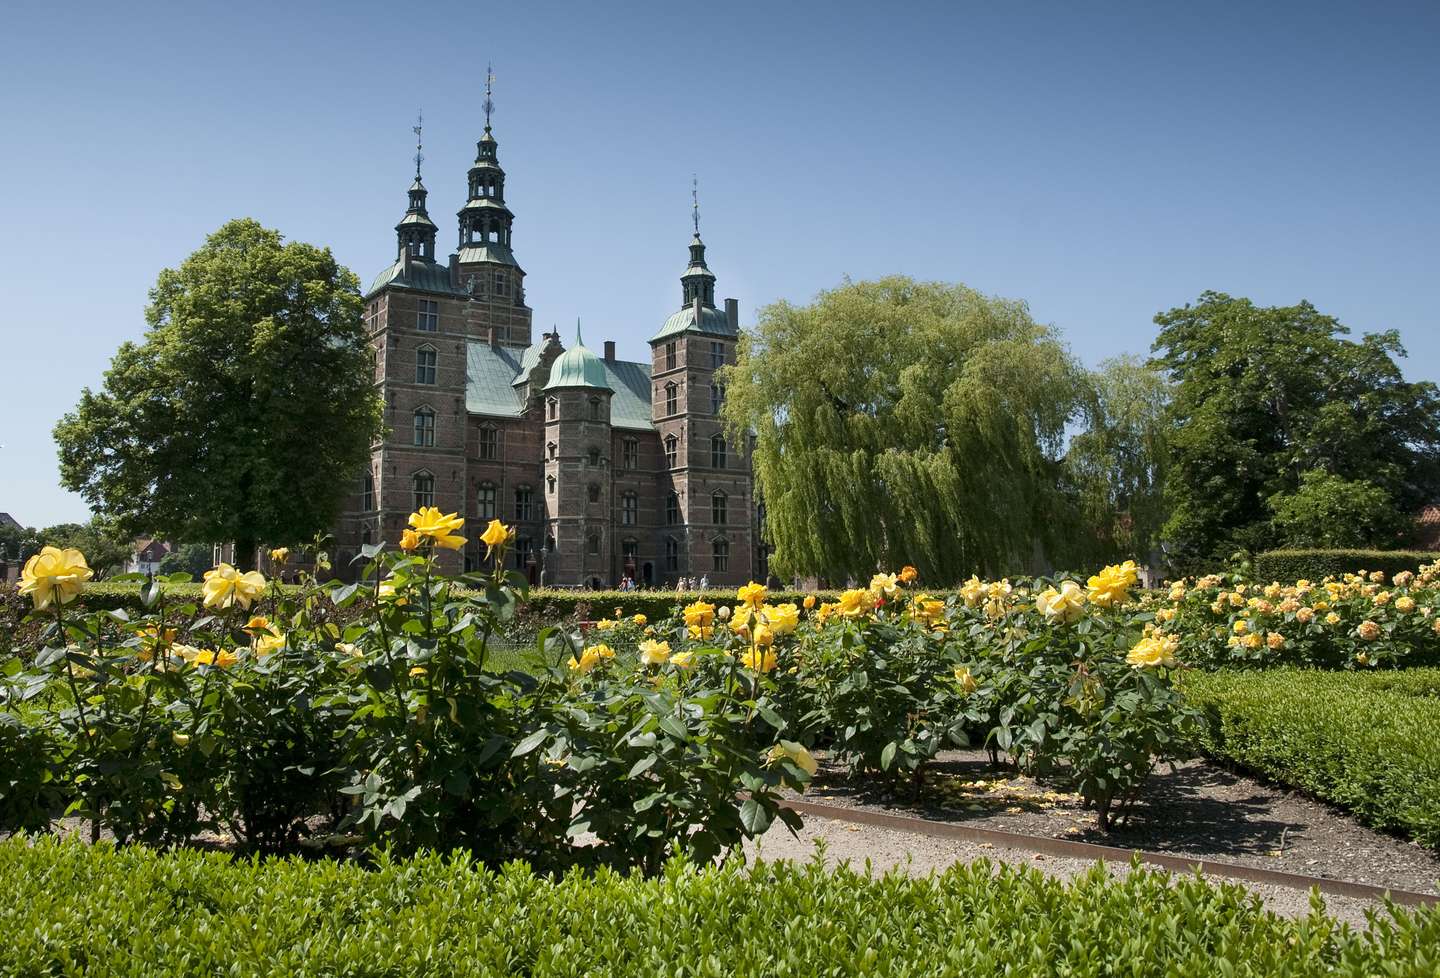 The Kings Garden and Rosenborg Castle